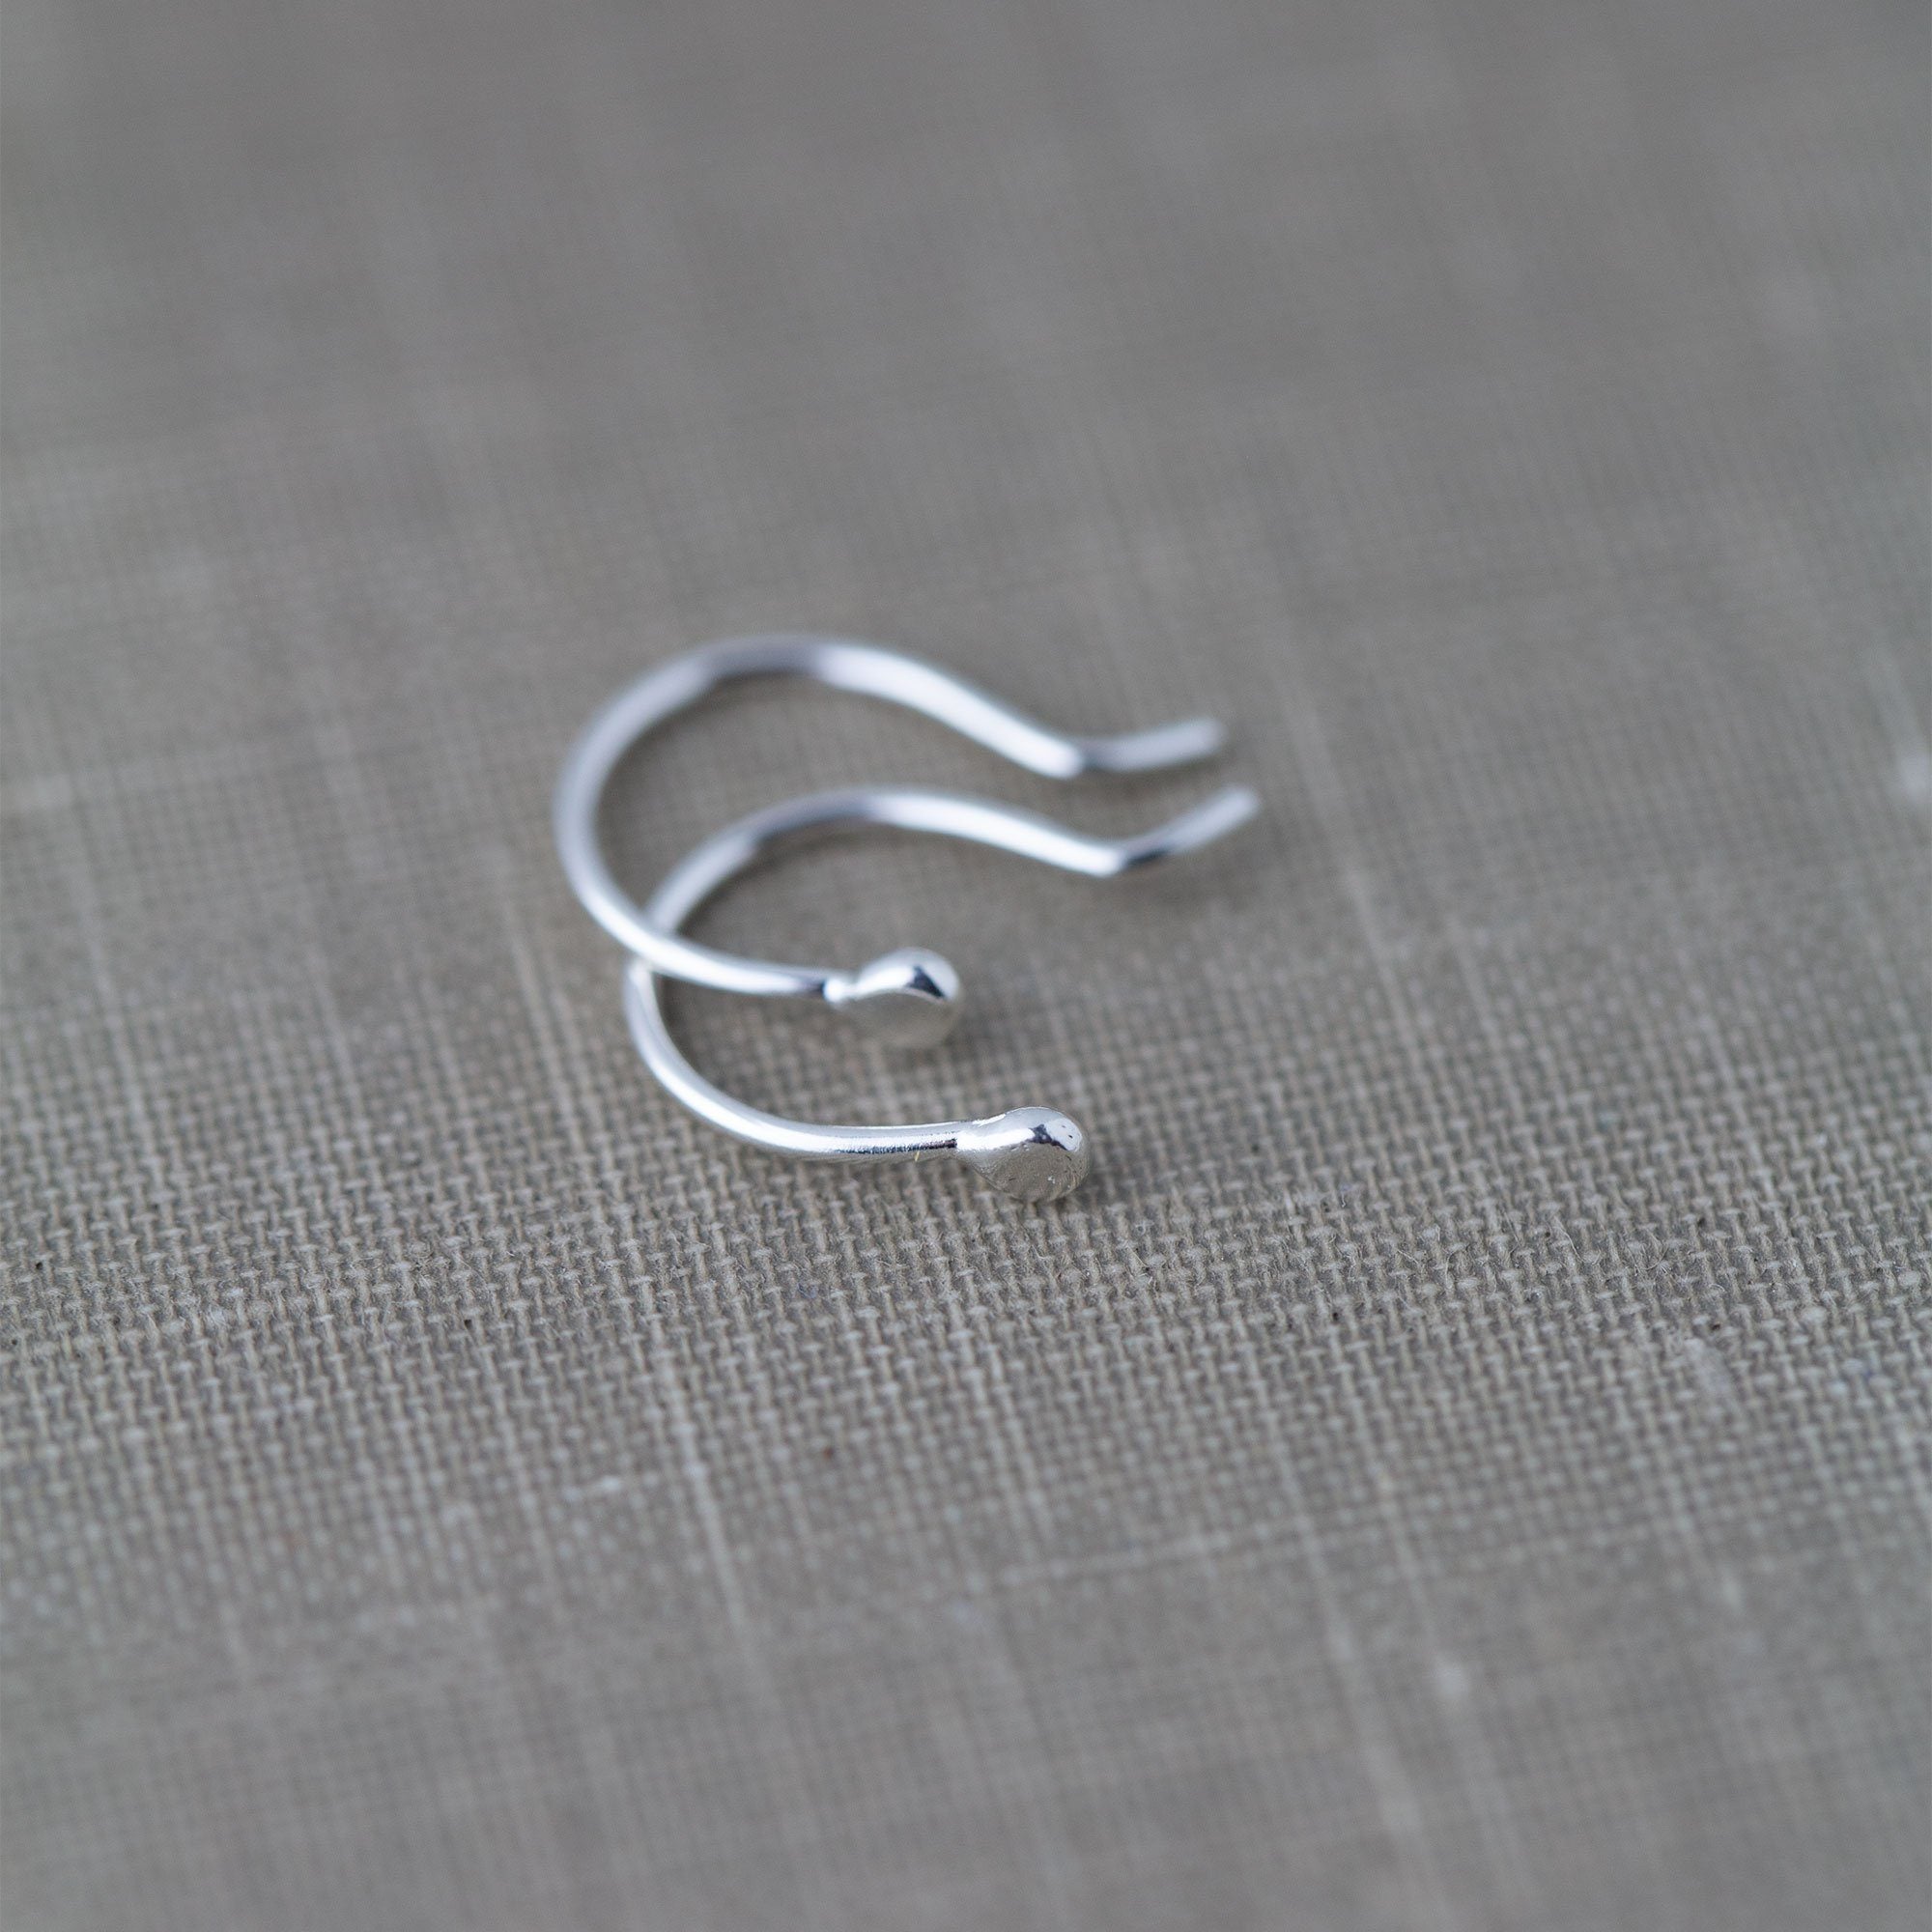 Mini Dew Drop Earrings - Sterling Silver - Handmade Jewelry by Burnish